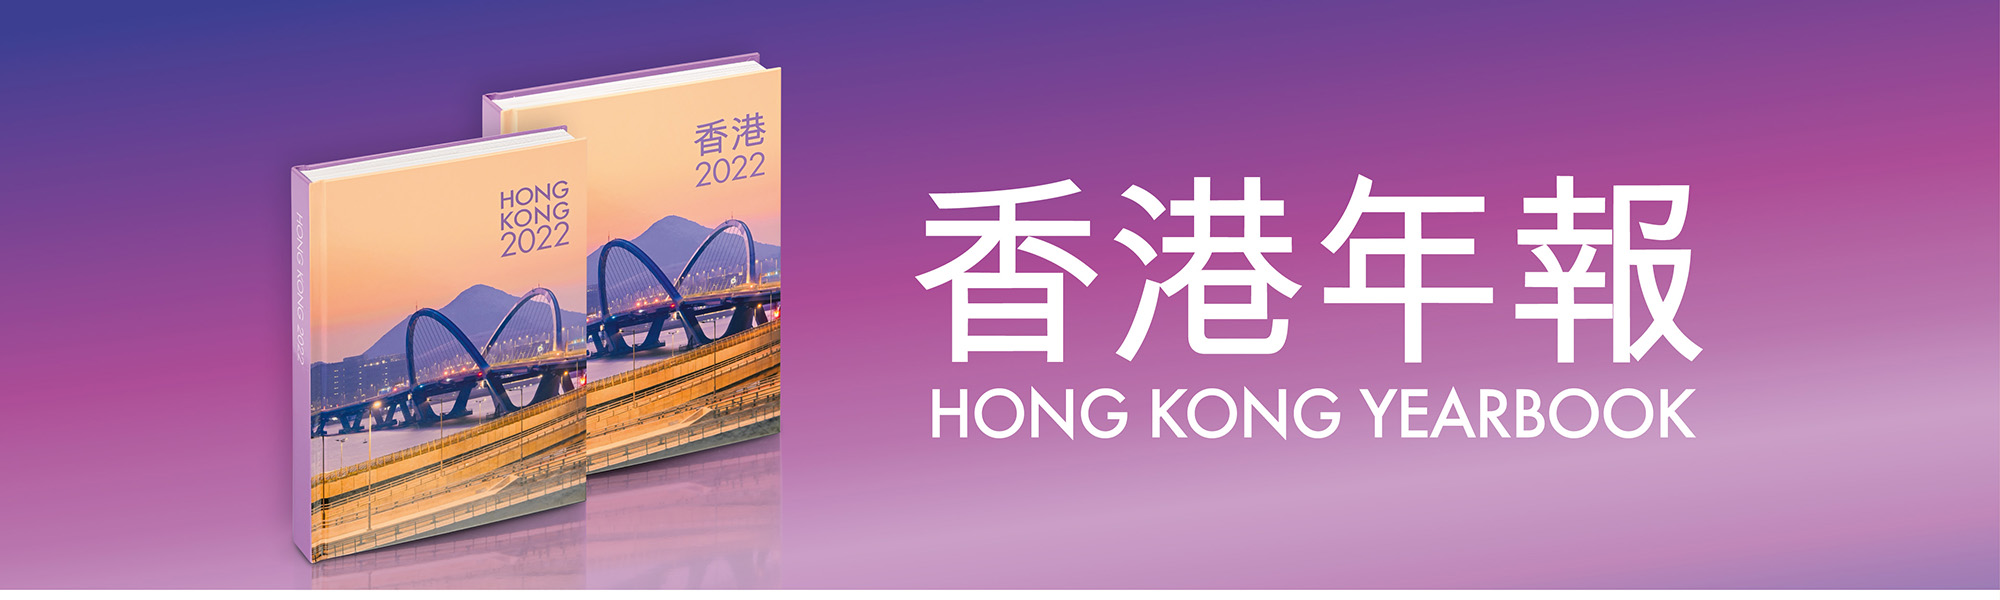 香港年報 Hong Kong Yearbook